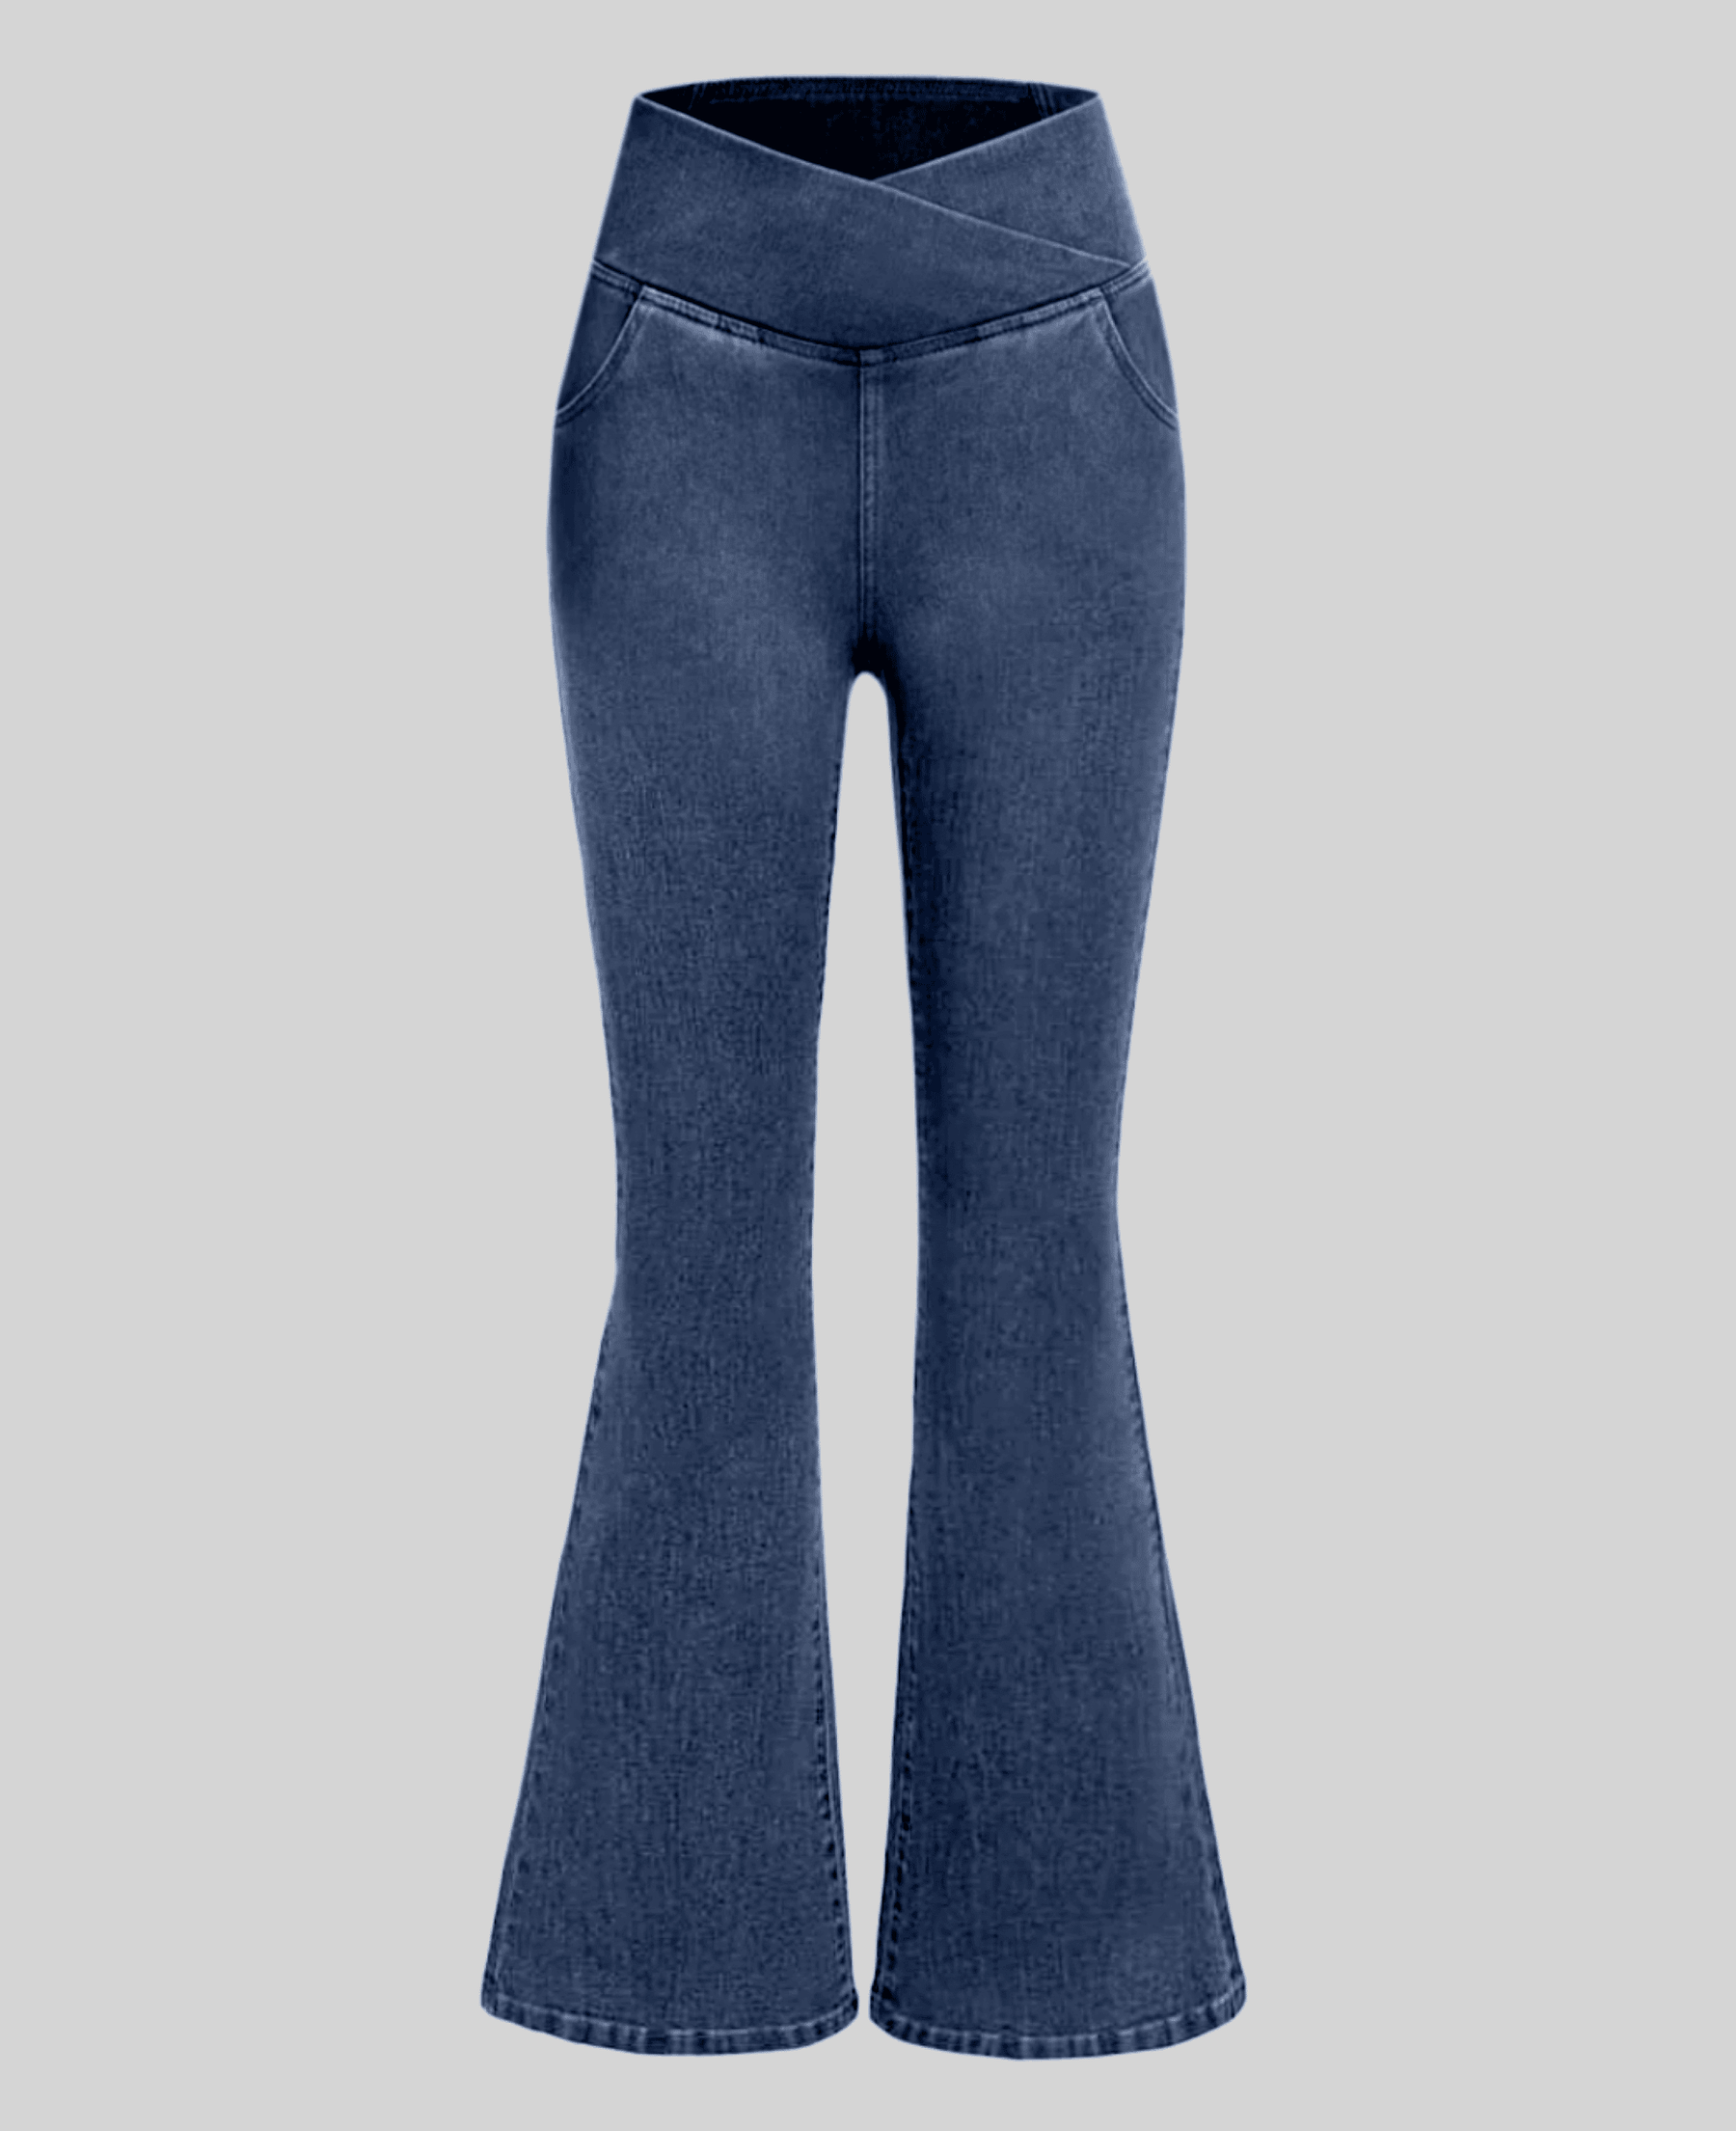 Calça Jeans Cintura Alta Modeladora